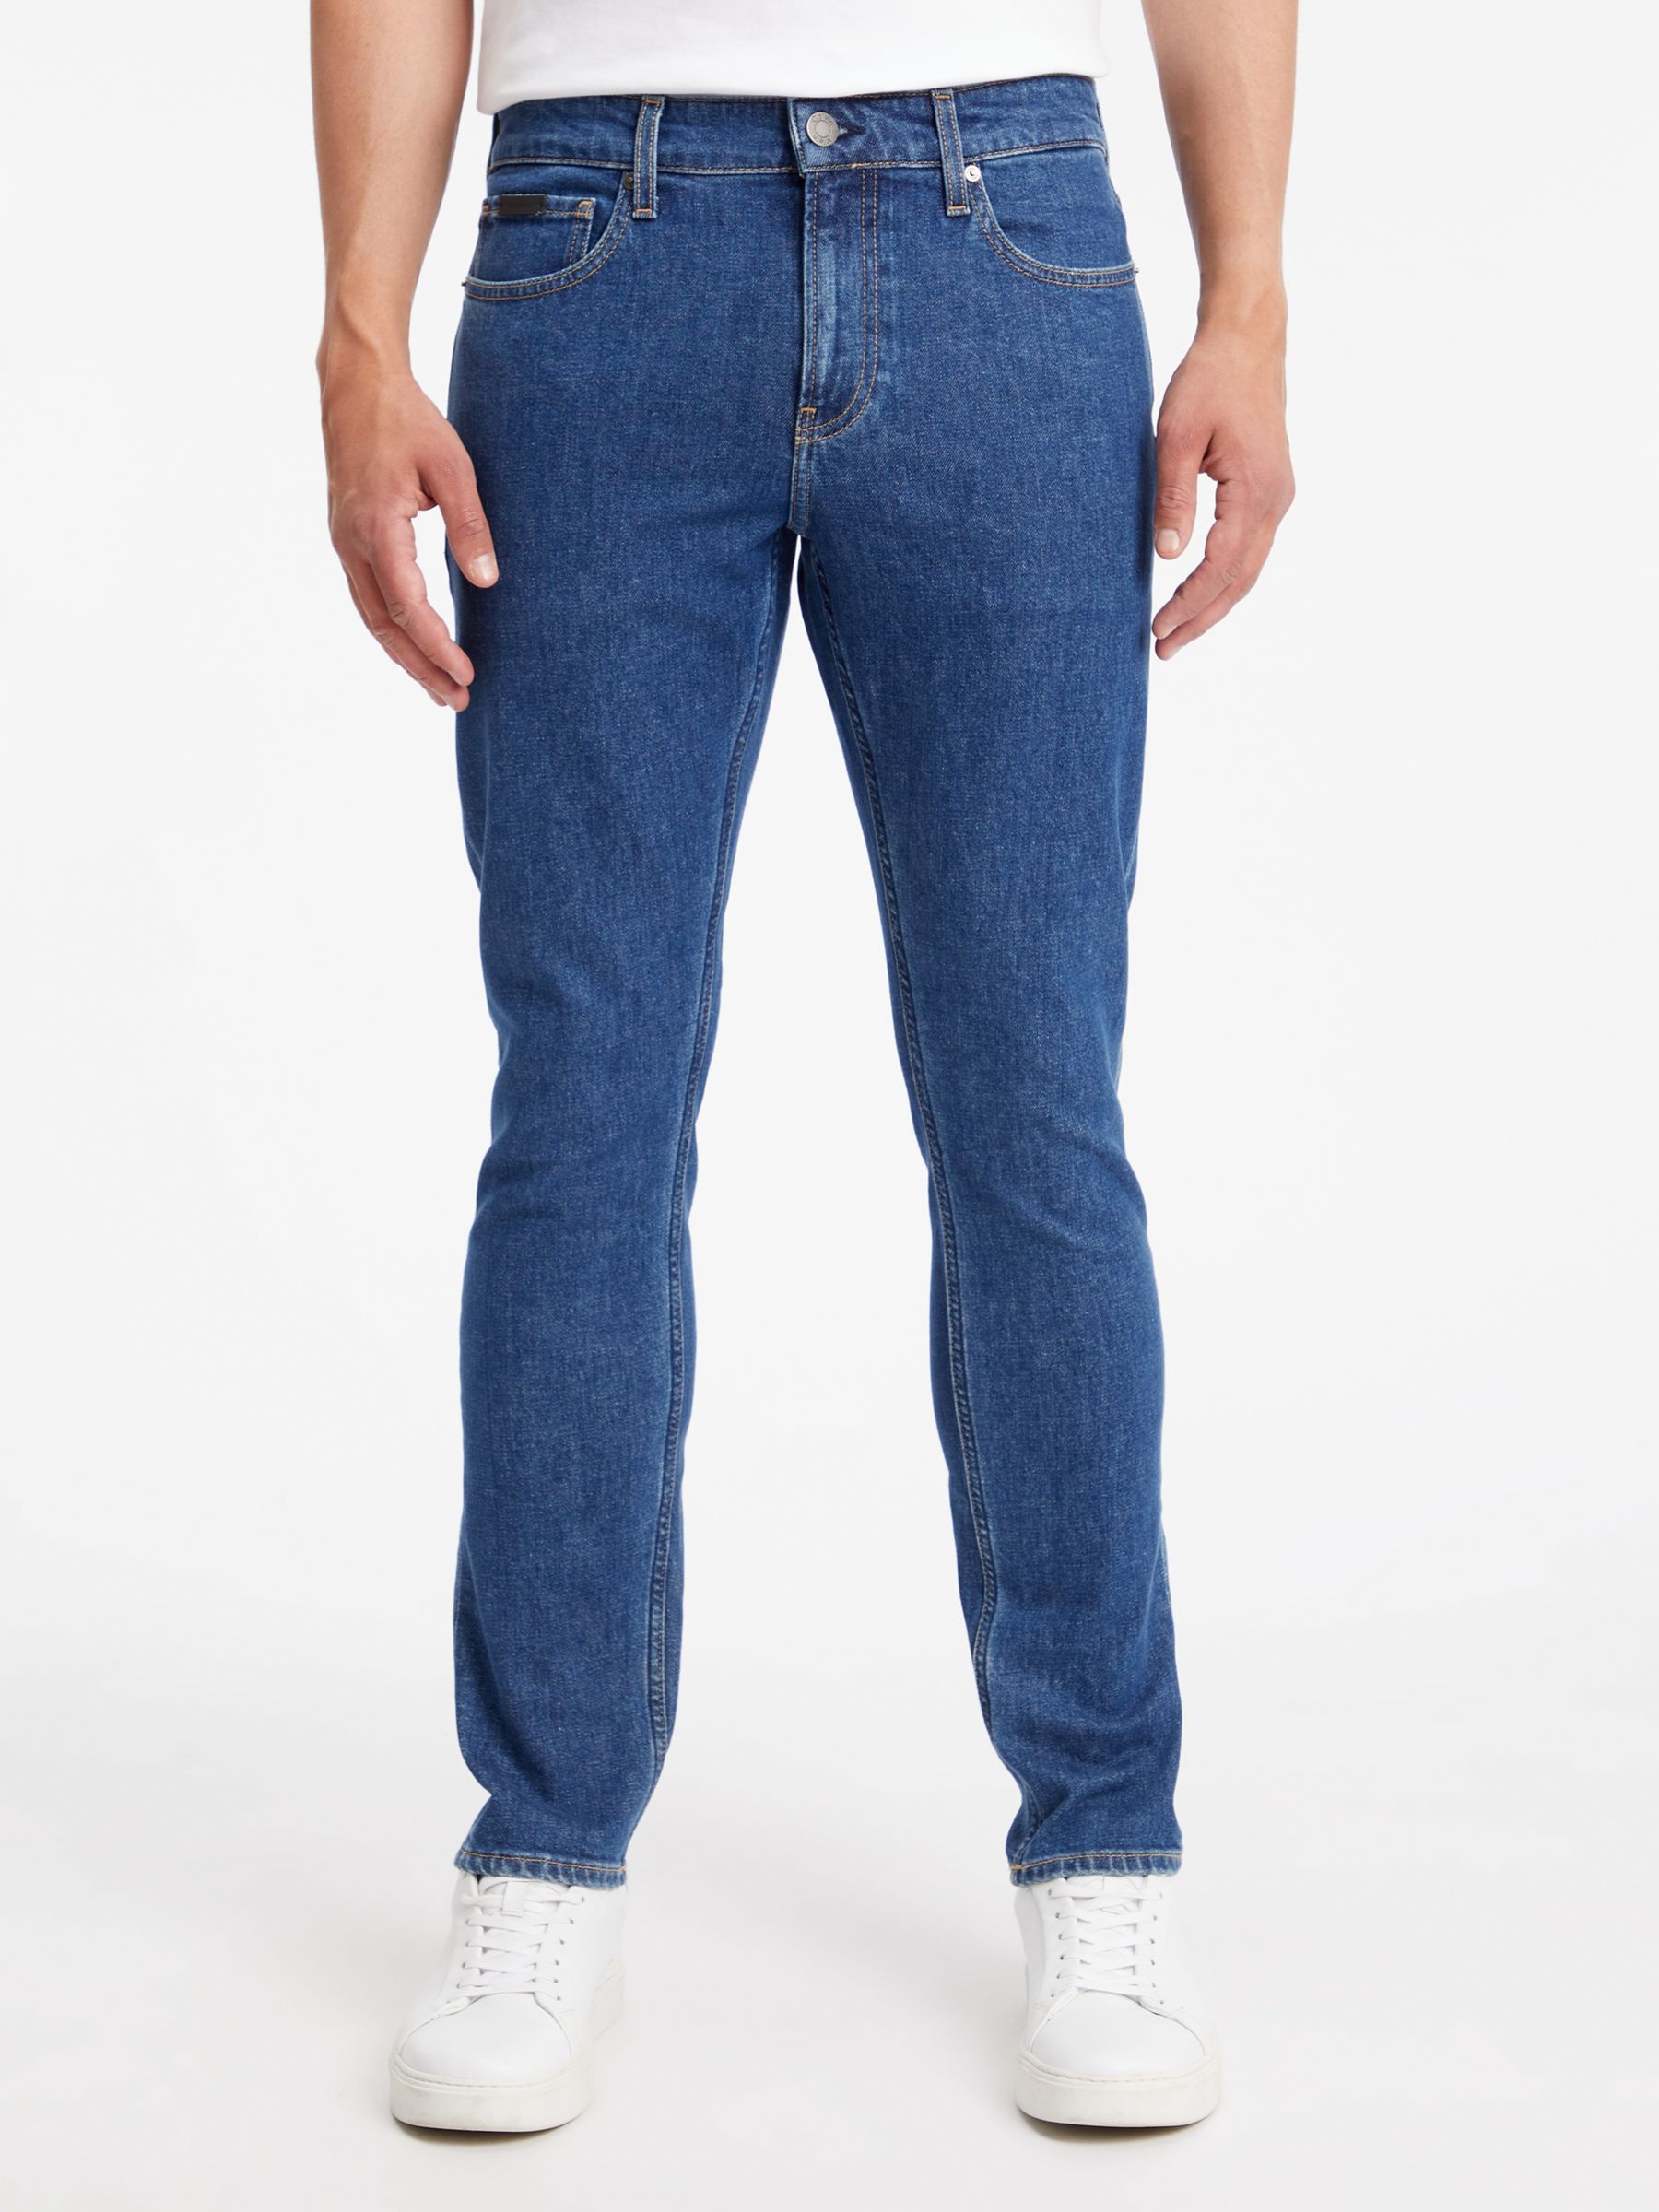 Calvin Klein Slim Fit Jeans, Denim Dark, 28S